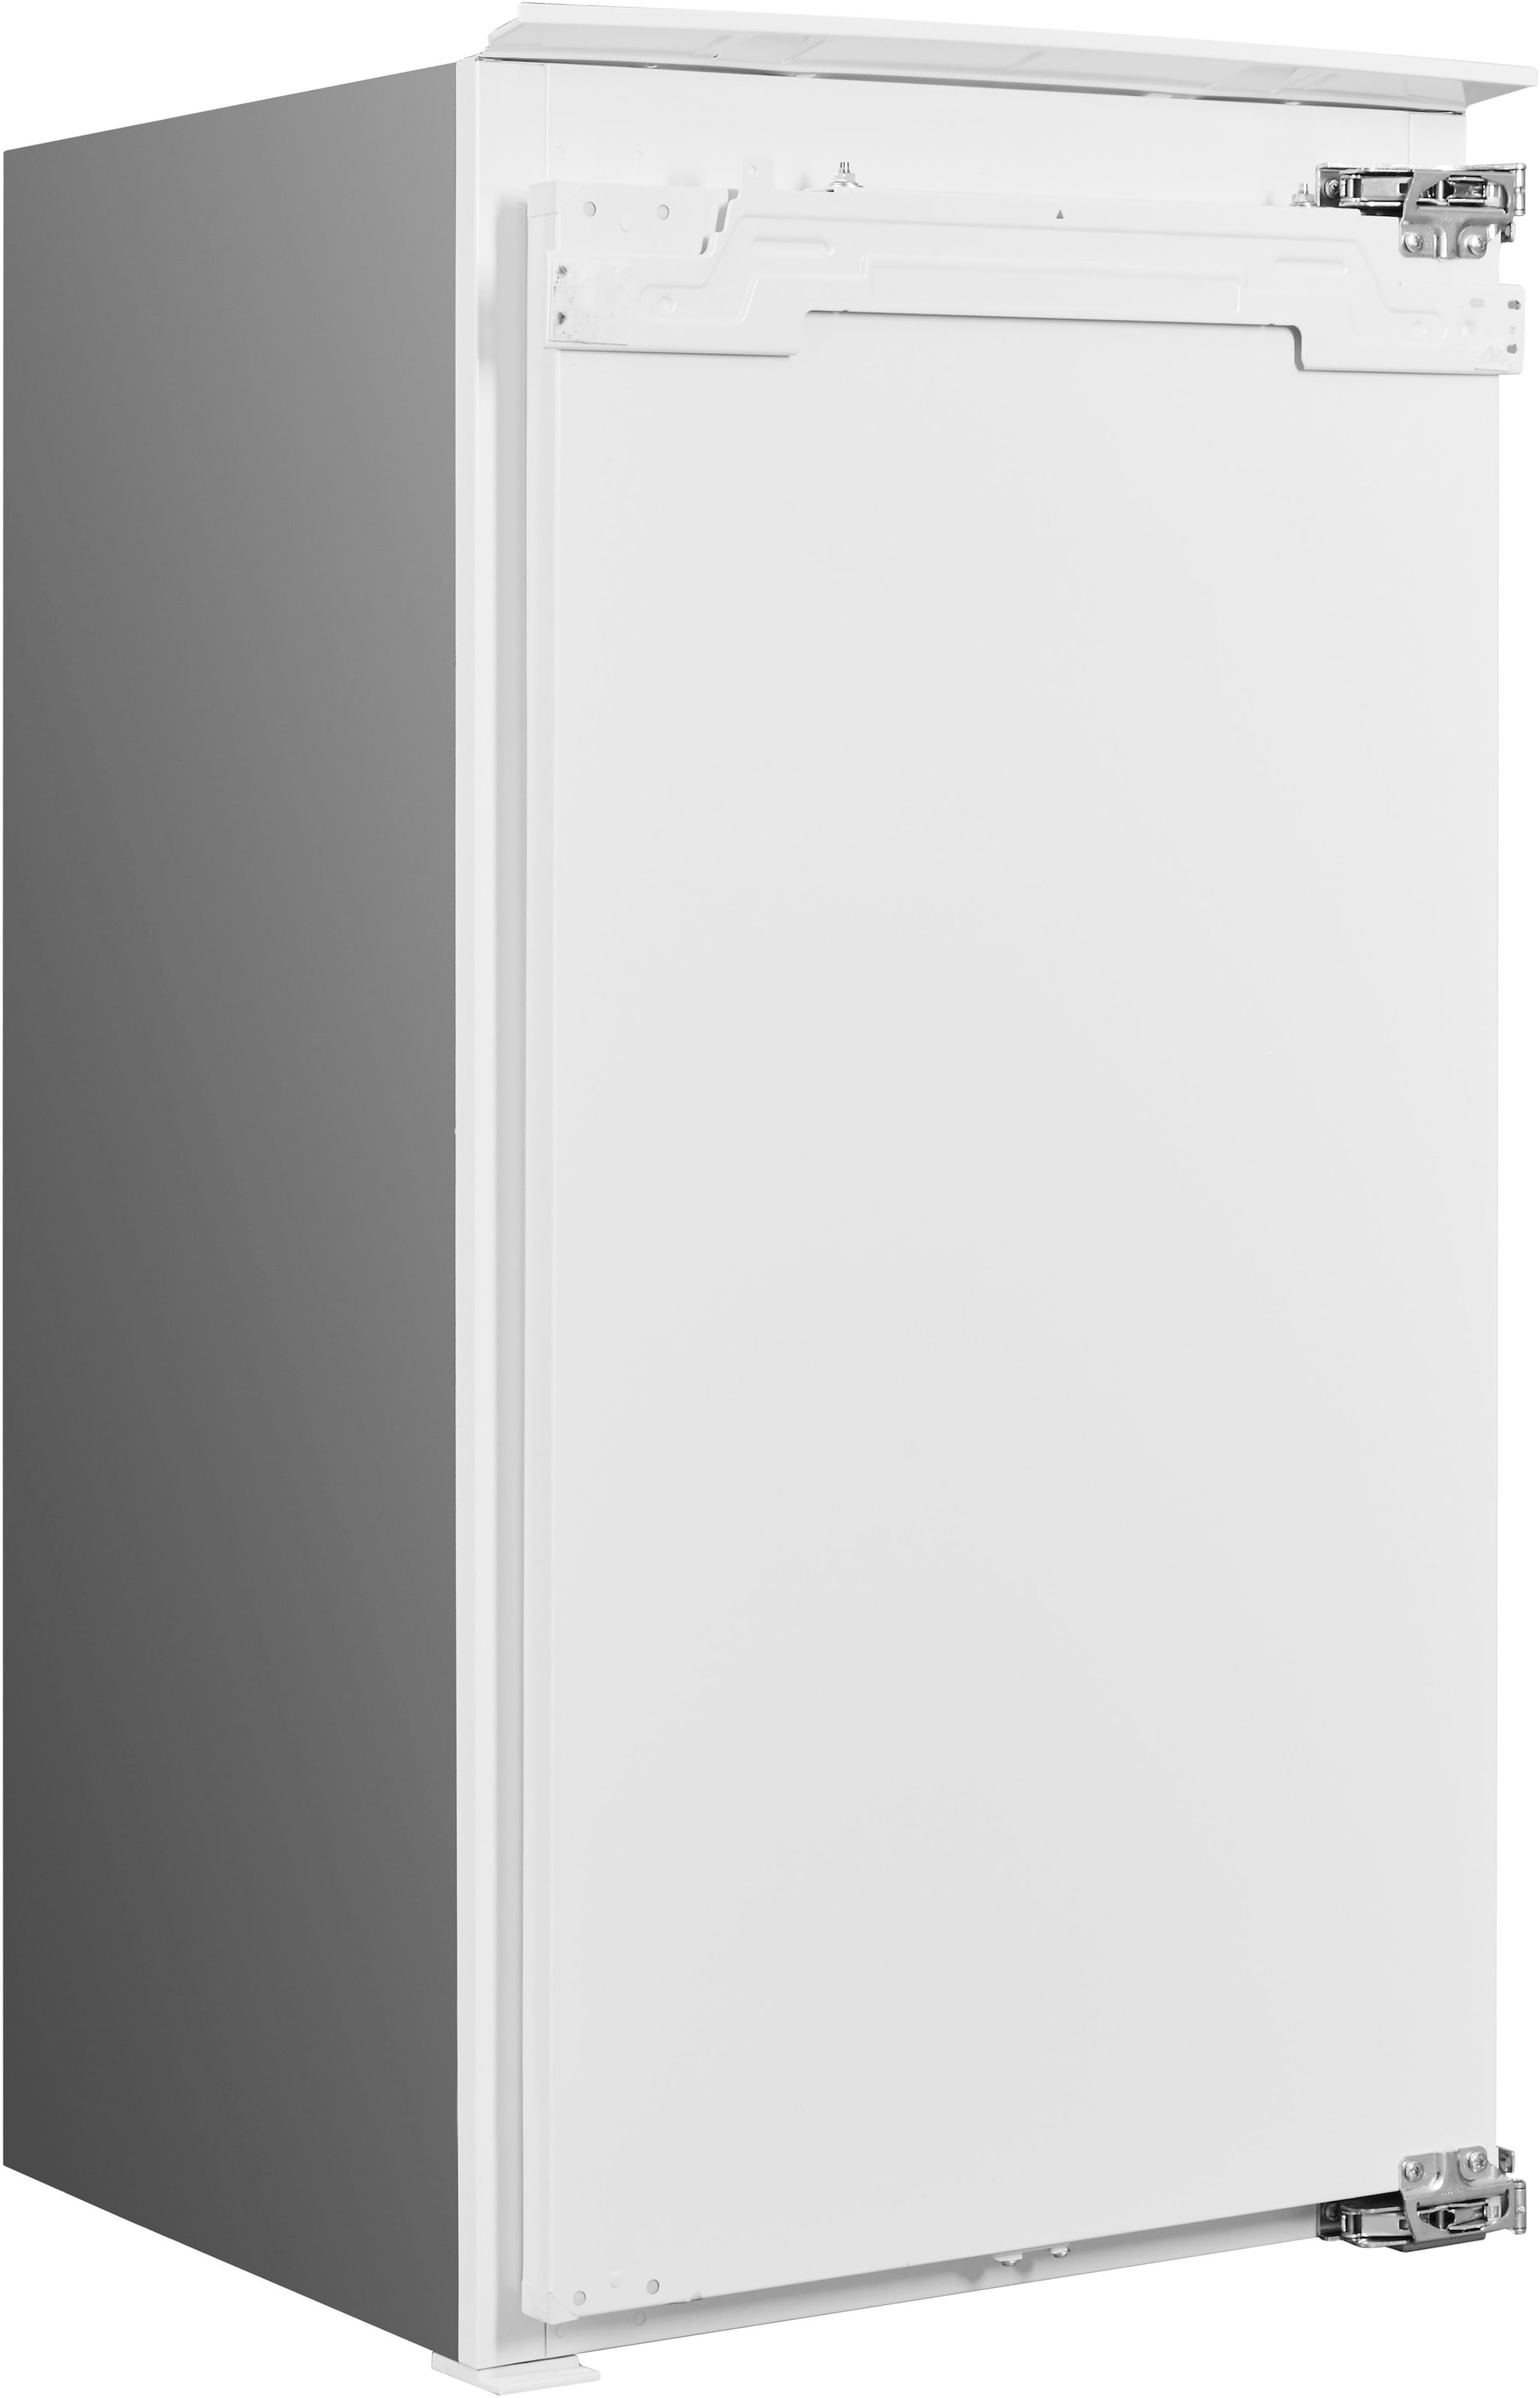 BAUKNECHT Einbaukühlschrank »KSI 10VF3«, KSI 10VF3, 102 cm hoch, 55,7 cm breit